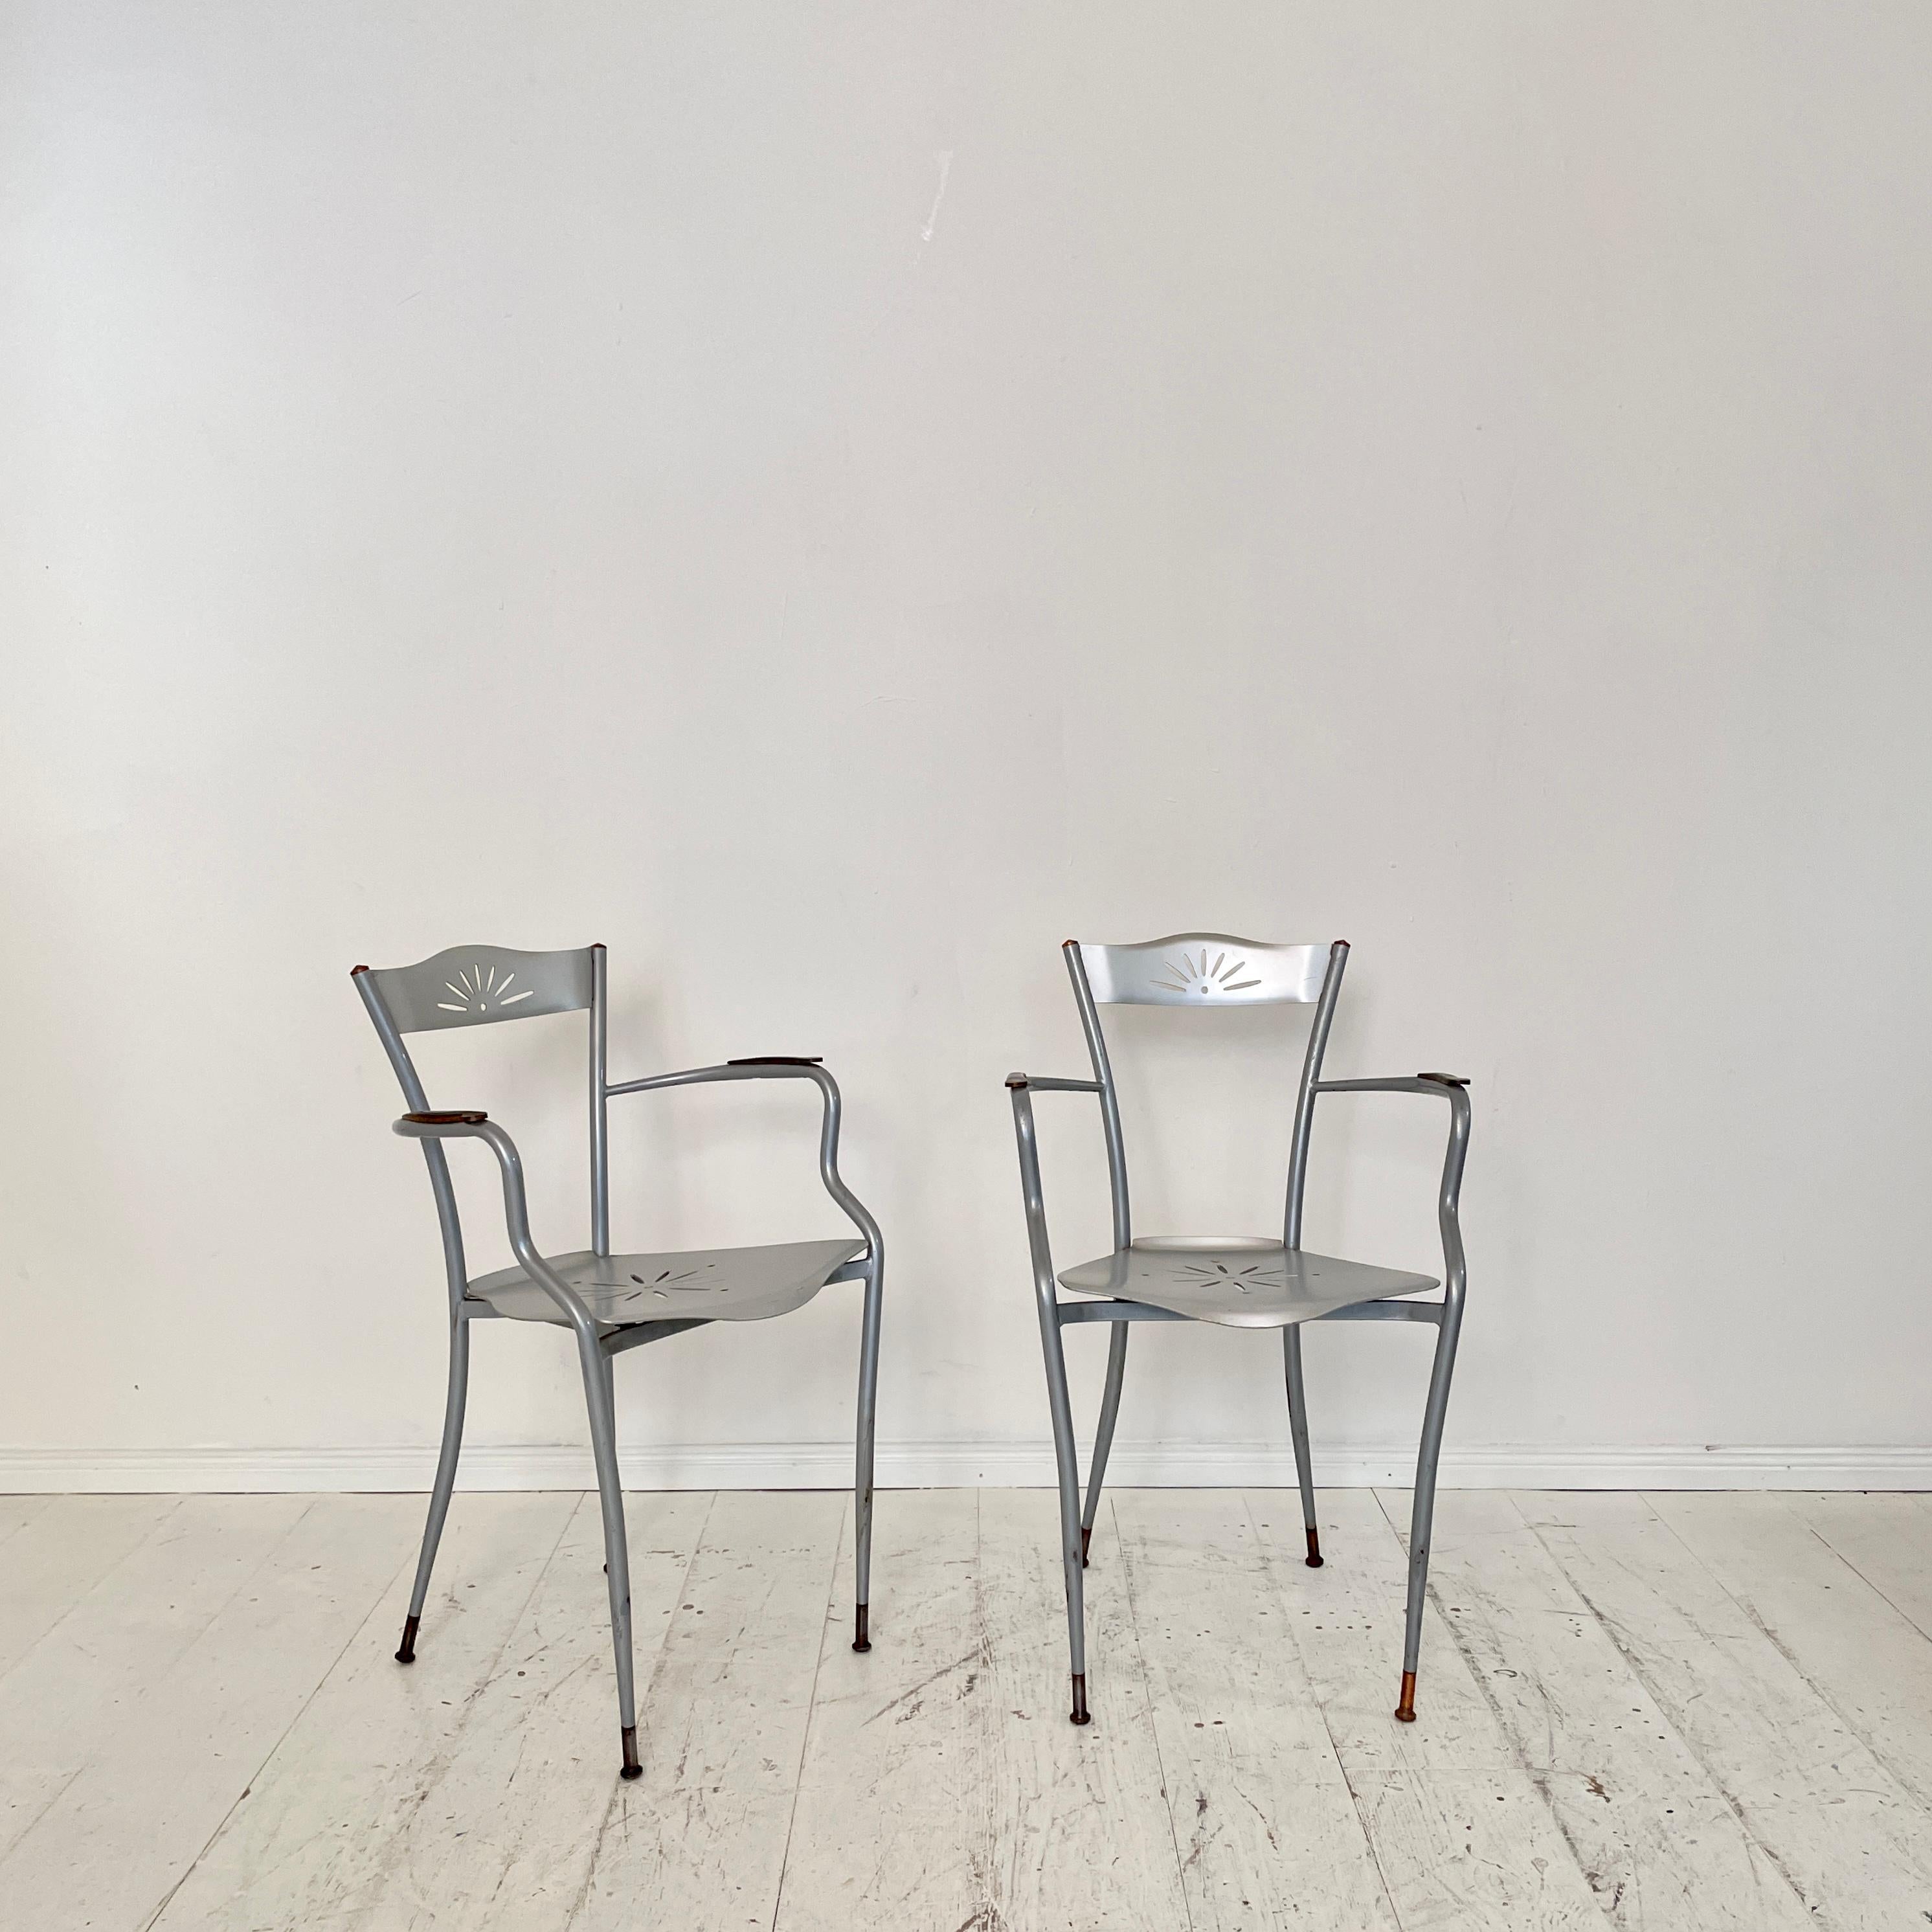 Dieses schöne Paar französische Sessel aus Metall und Kupfer wurde um 1980 hergestellt.
Ein einzigartiges Stück, das ein toller Blickfang für Ihre antike, moderne, Space Age- oder Mid-Century-Einrichtung ist.
Wenn Sie weitere Fragen haben, helfen